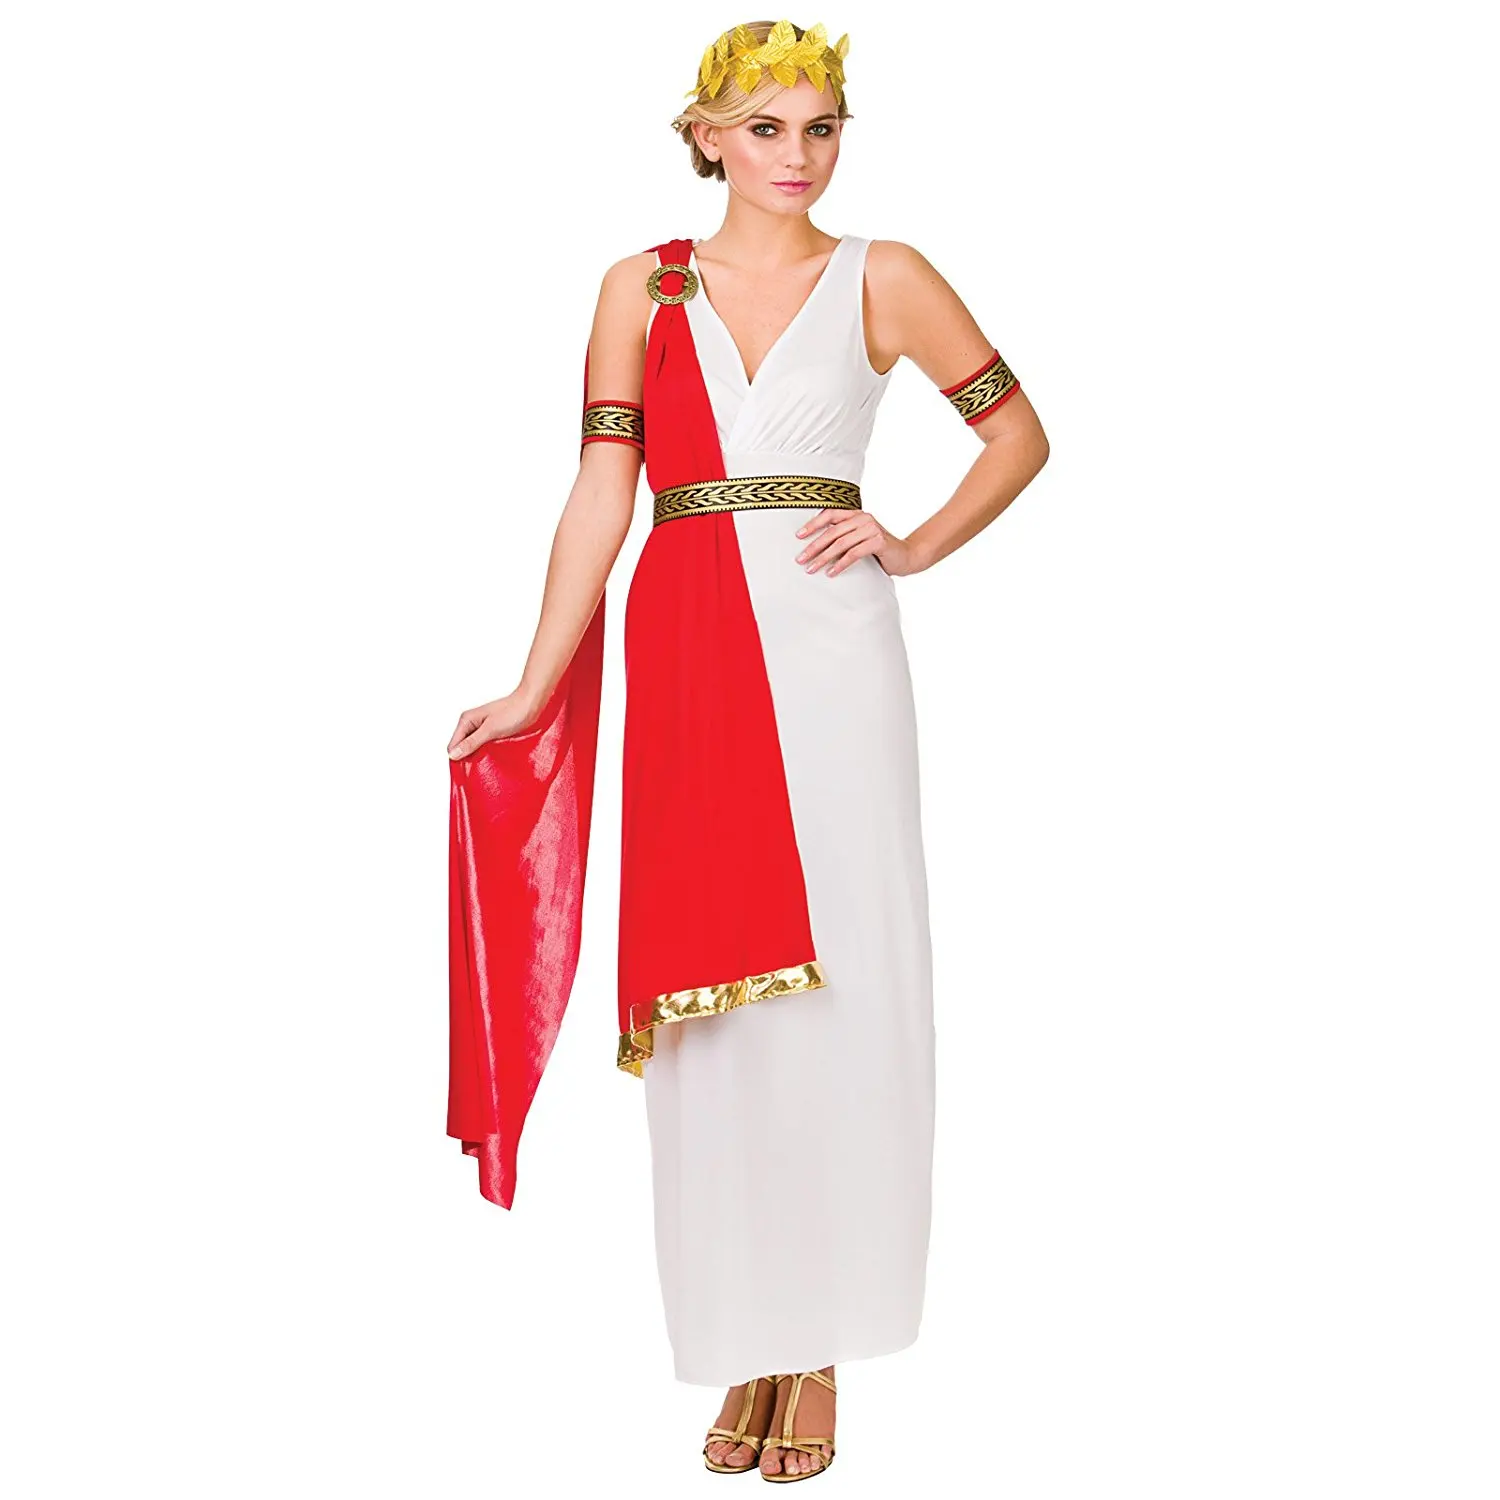 Платье римский